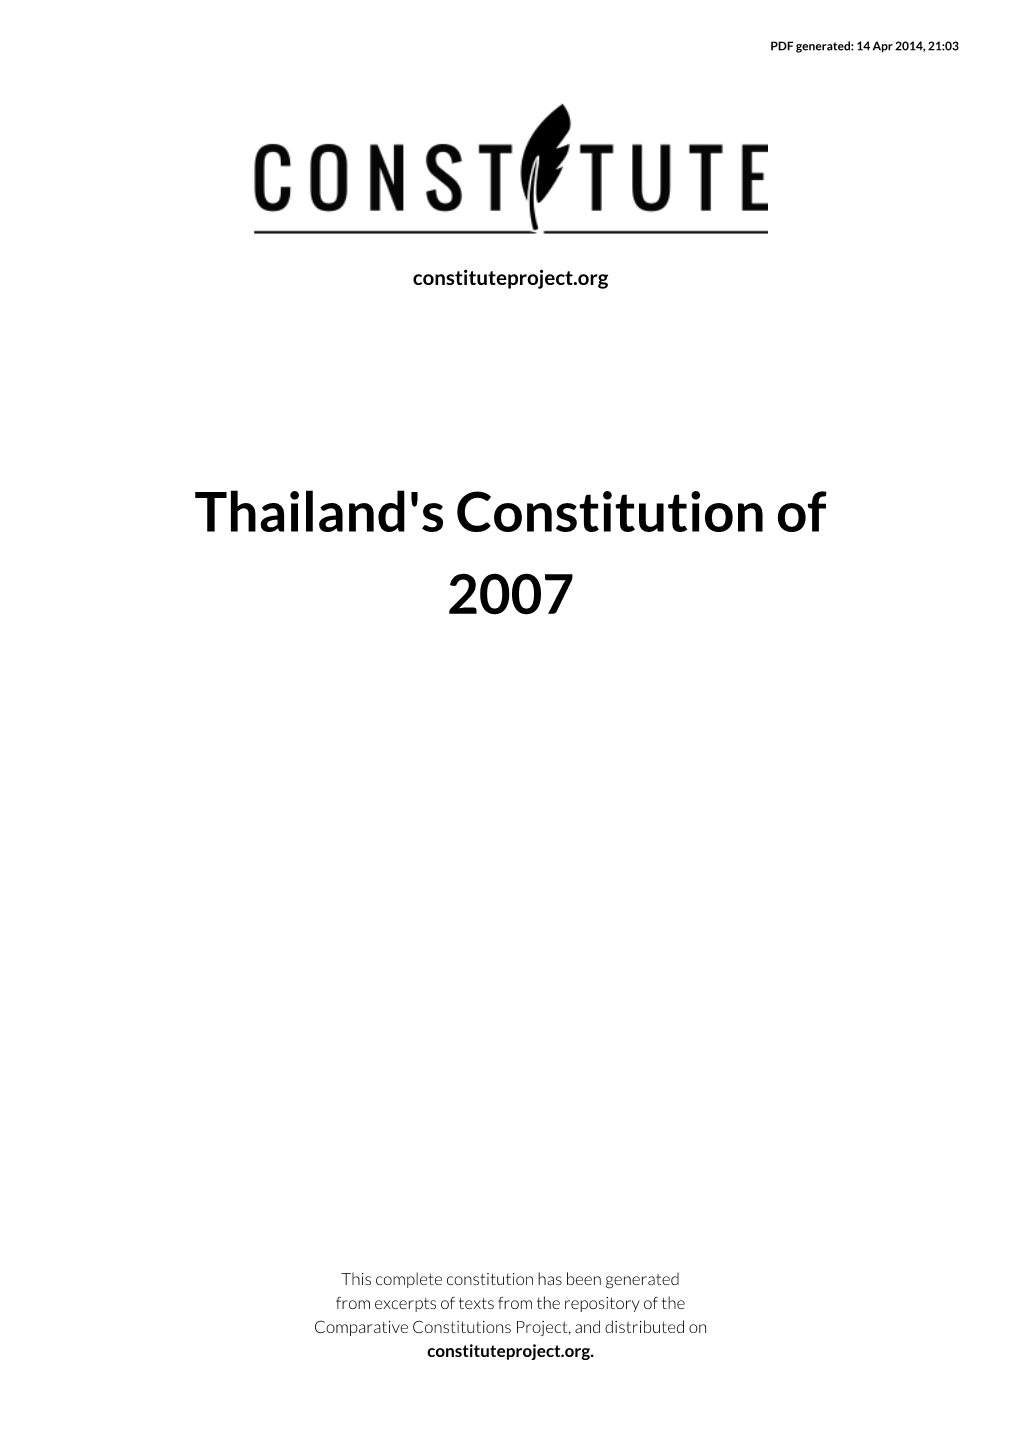 Thailand's Constitution of 2007